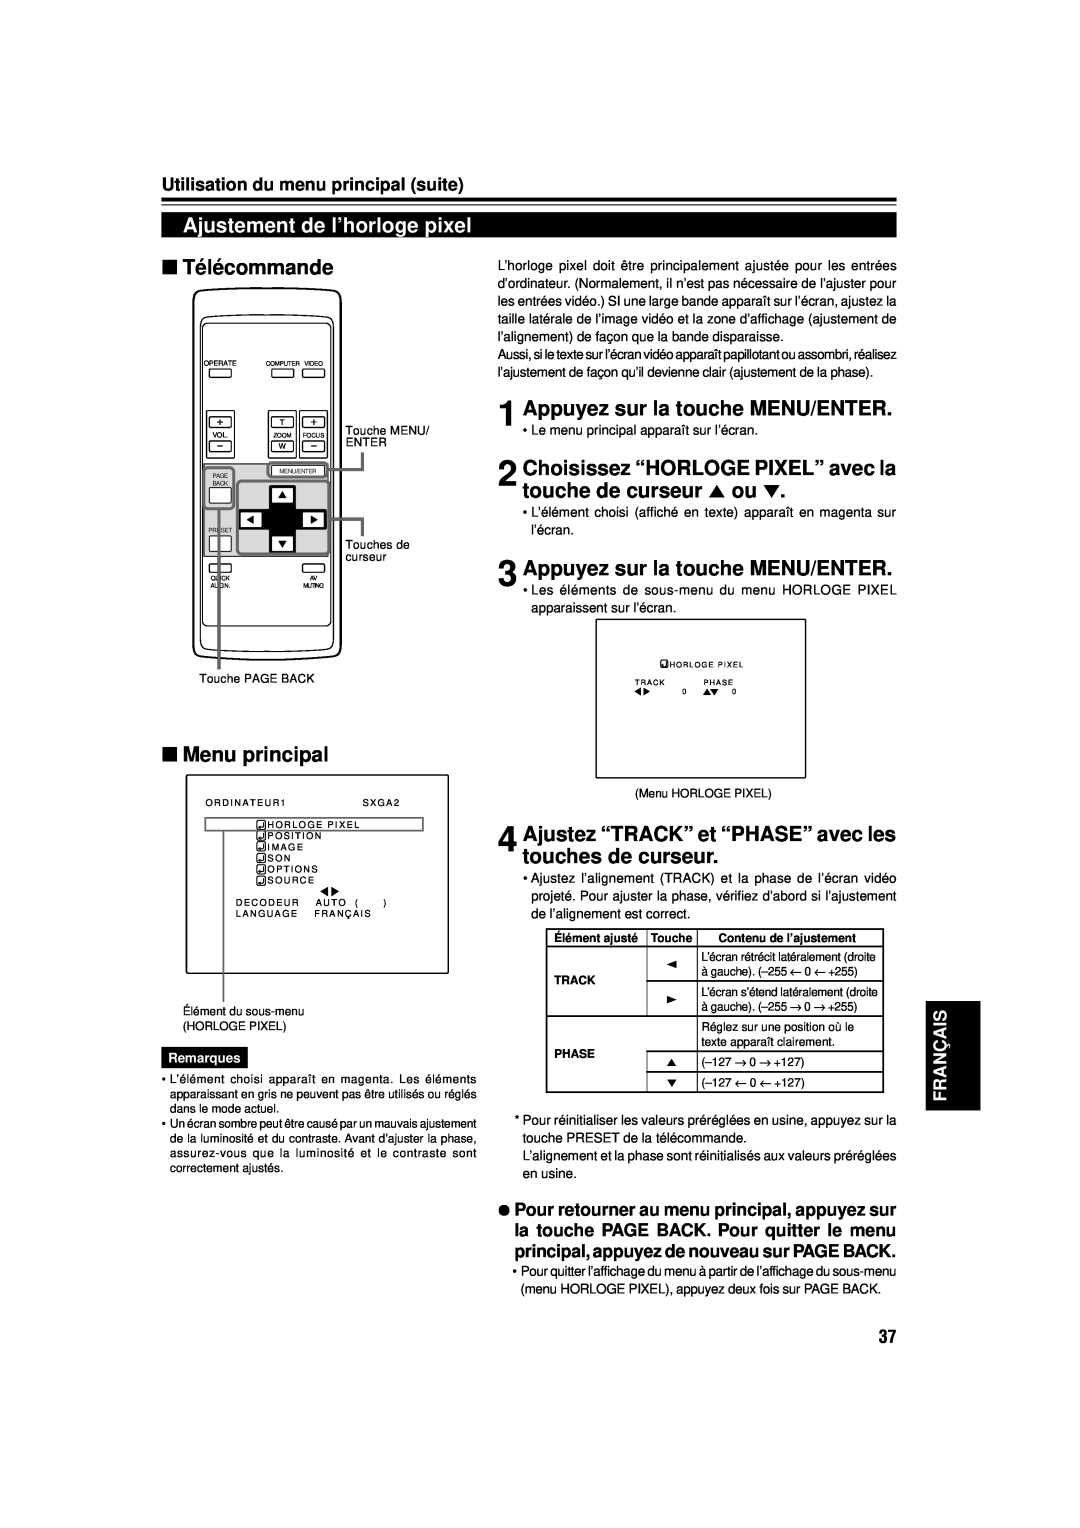 JVC DLA-M15U manual Ajustement de l’horloge pixel, Choisissez “HORLOGE PIXEL” avec la touche de curseur 5 ou, Télécommande 